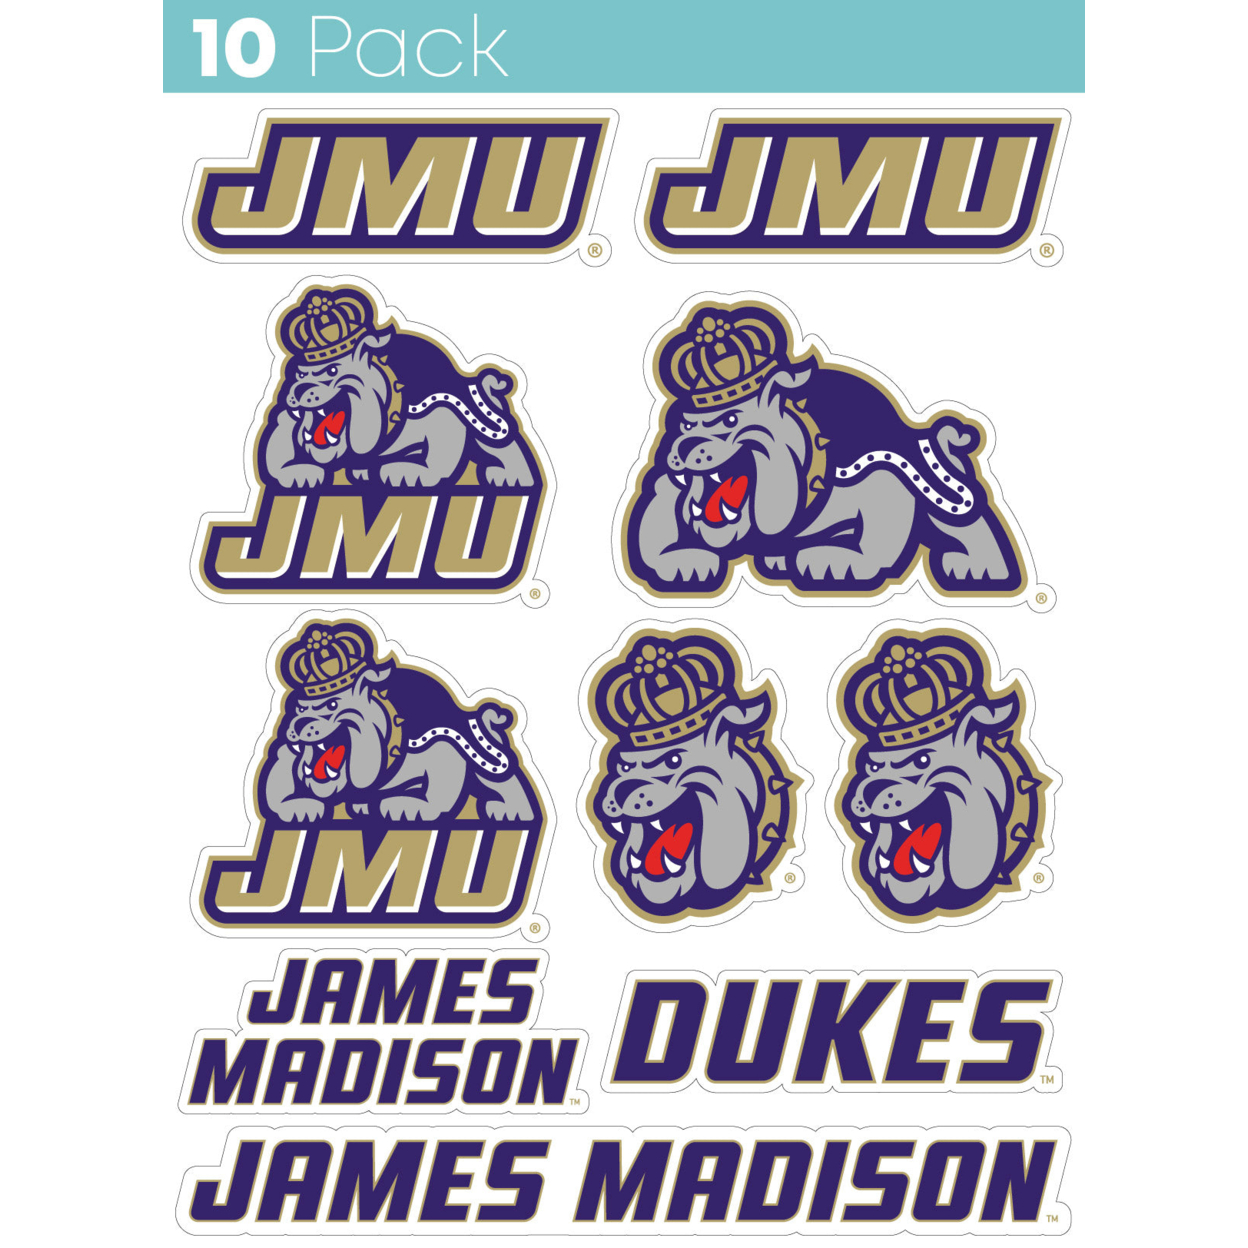 James Madison Dukes 10 Pack Collegiate Vinyl Decal StickerÂ 